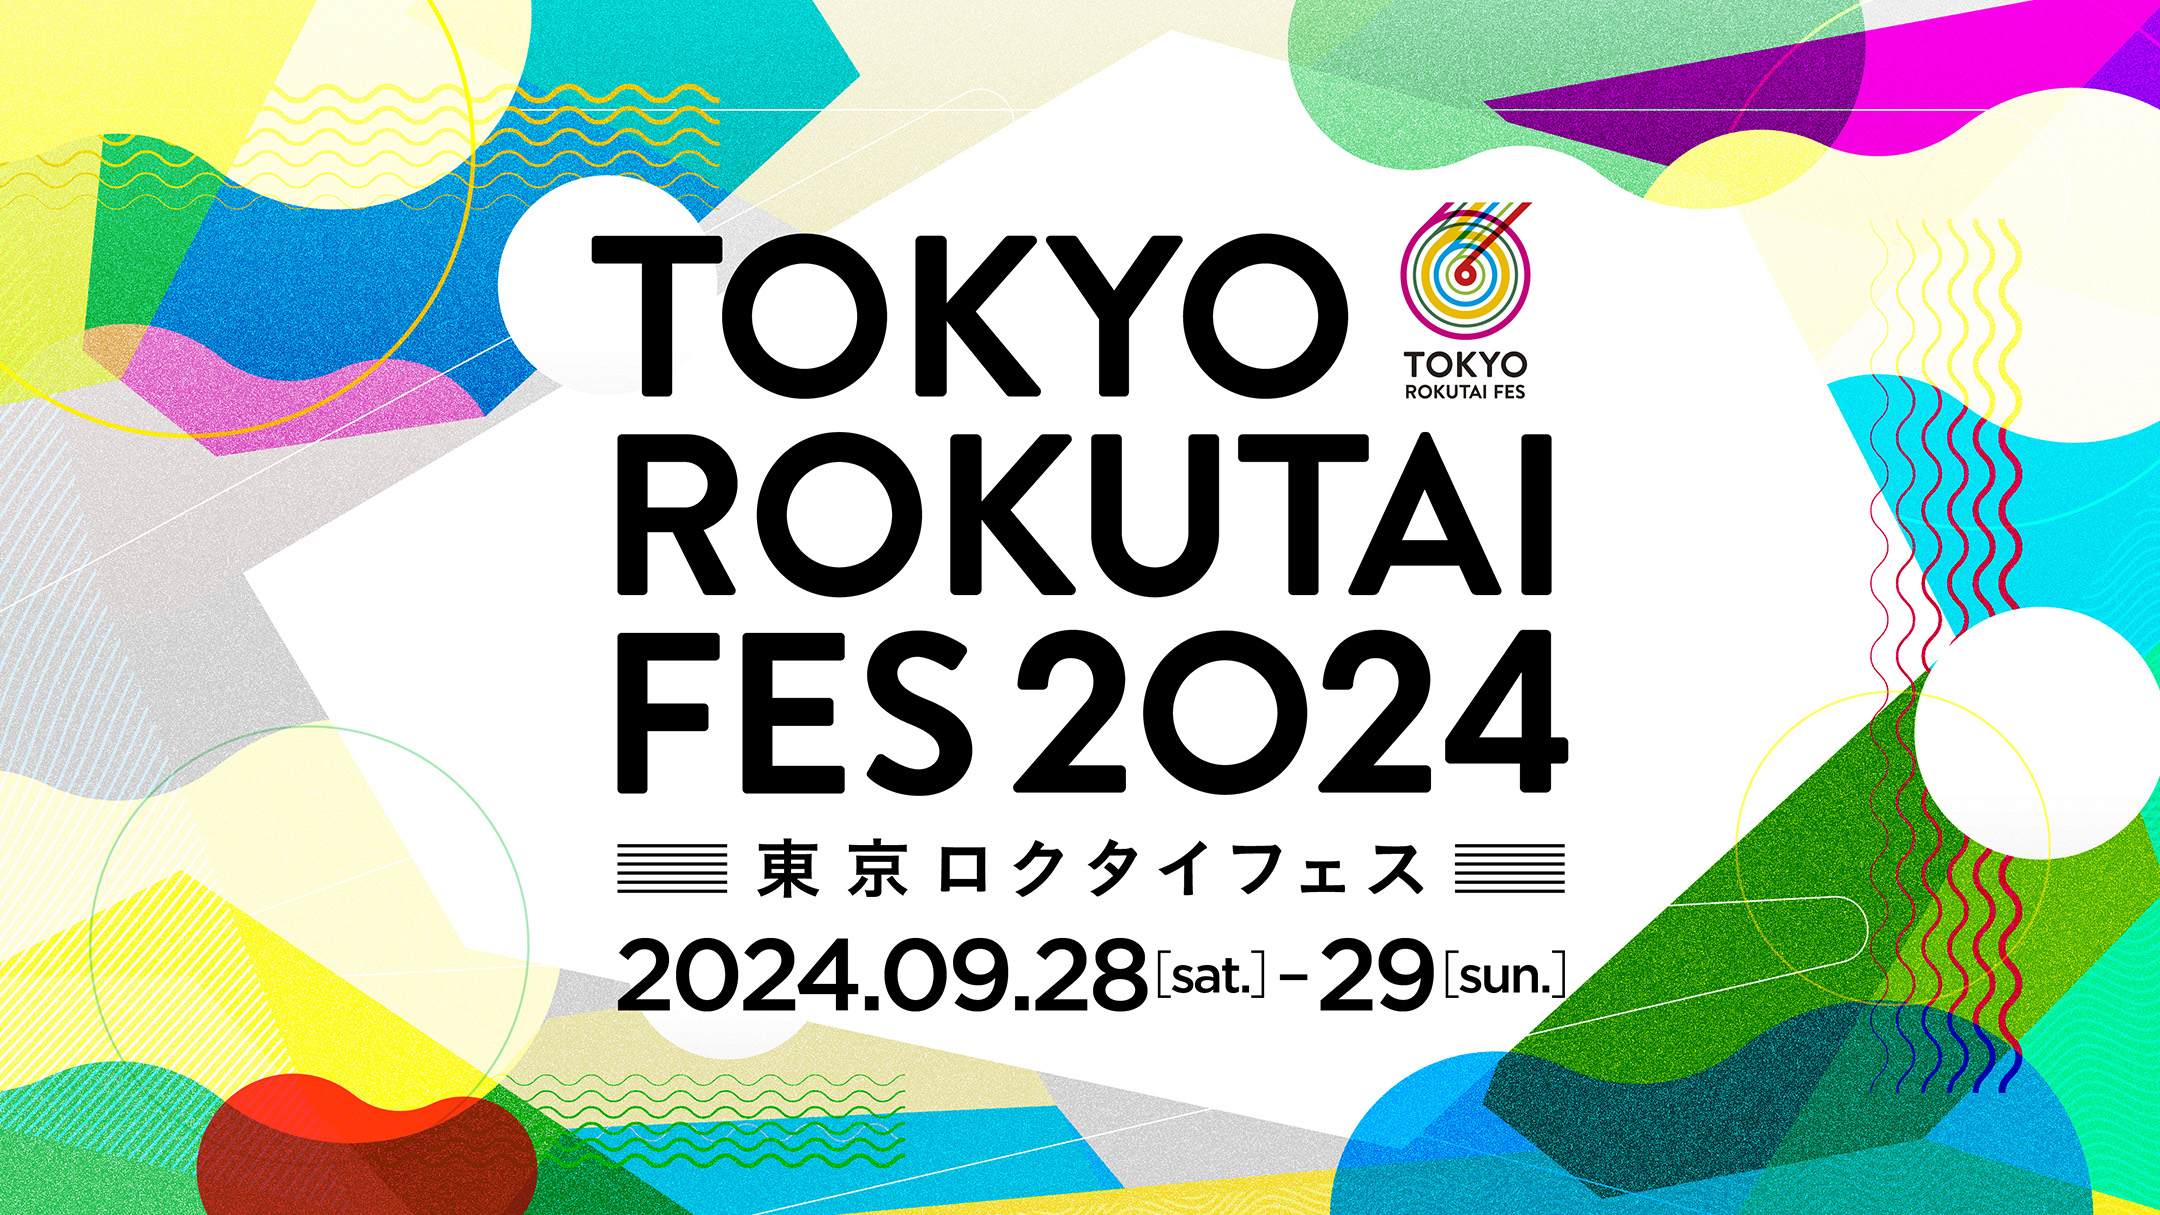 ランニングとカルチャーを融合させたランイベント「TOKYO ROKUTAI FES 2024」が今年も9月に開催。参加者募集中